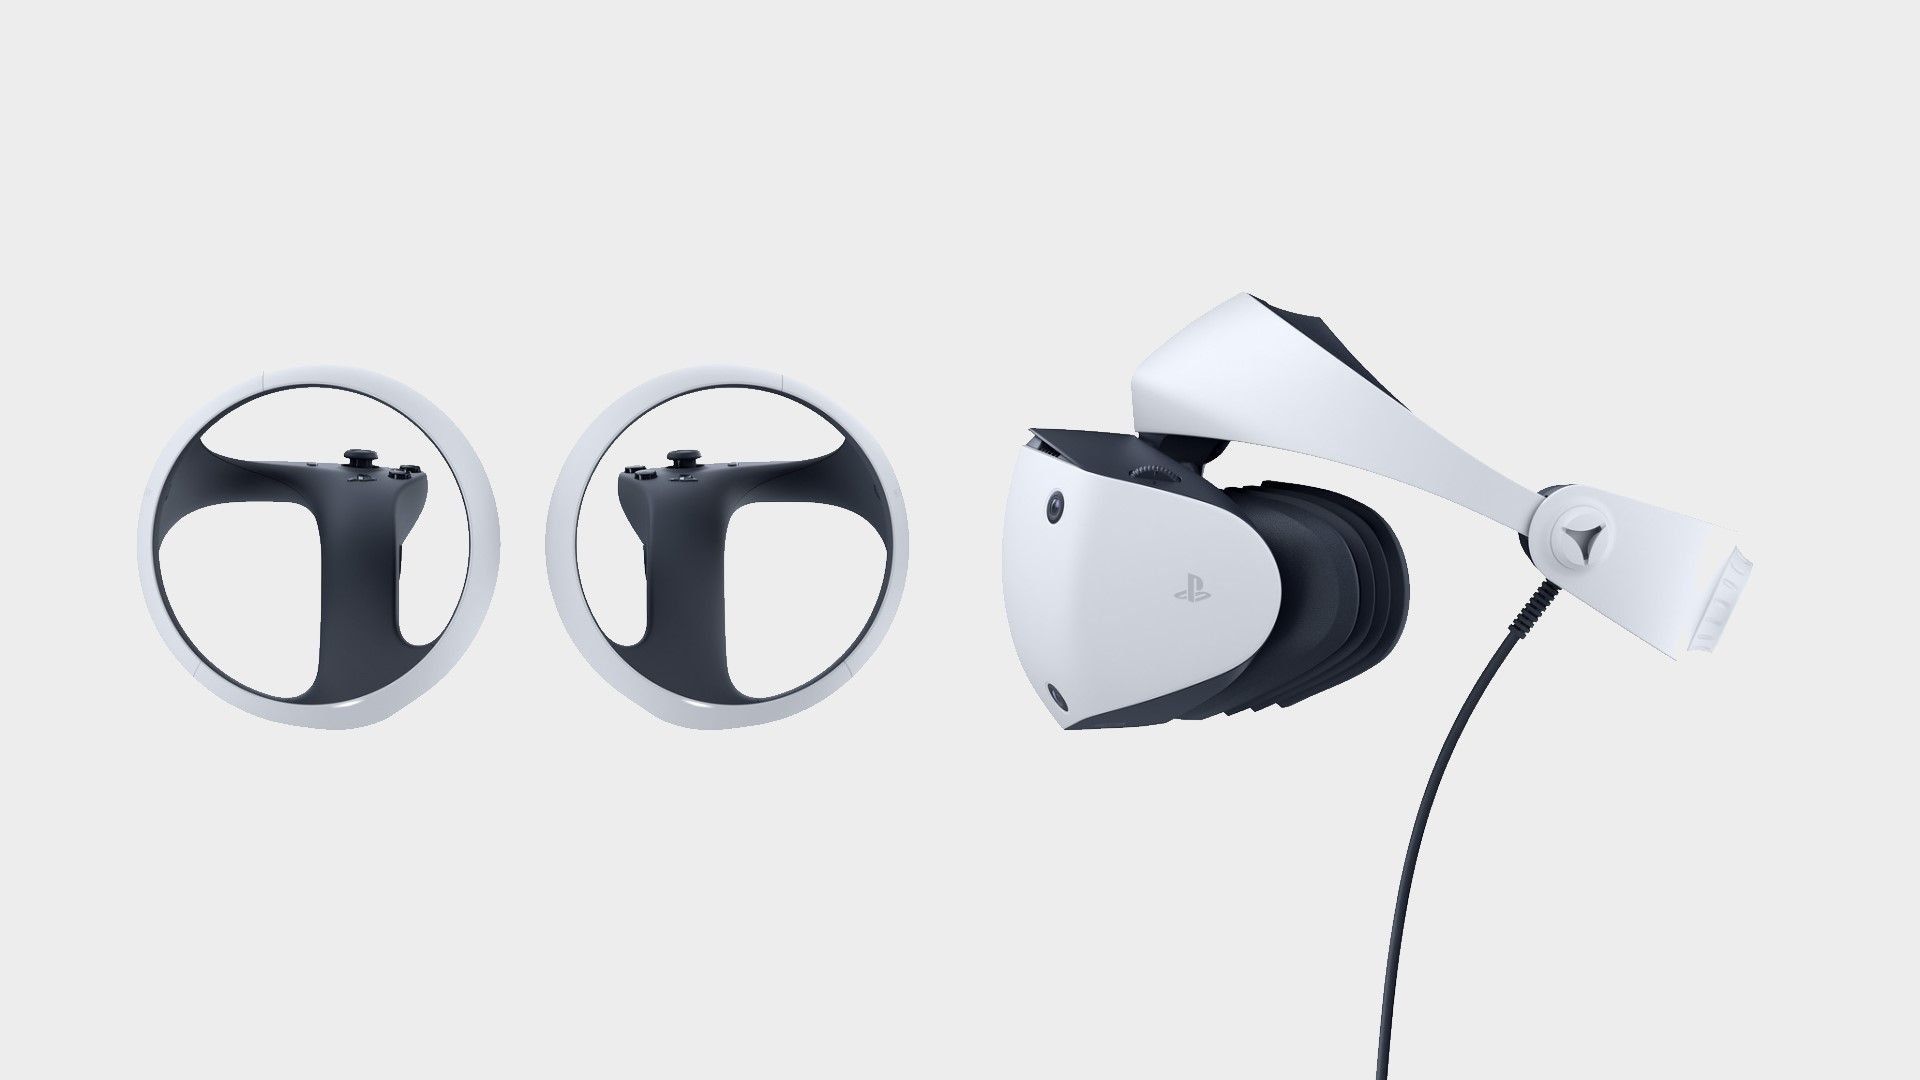 On a testé le PlayStation VR 2, le nouveau casque de réalité virtuelle de Sony